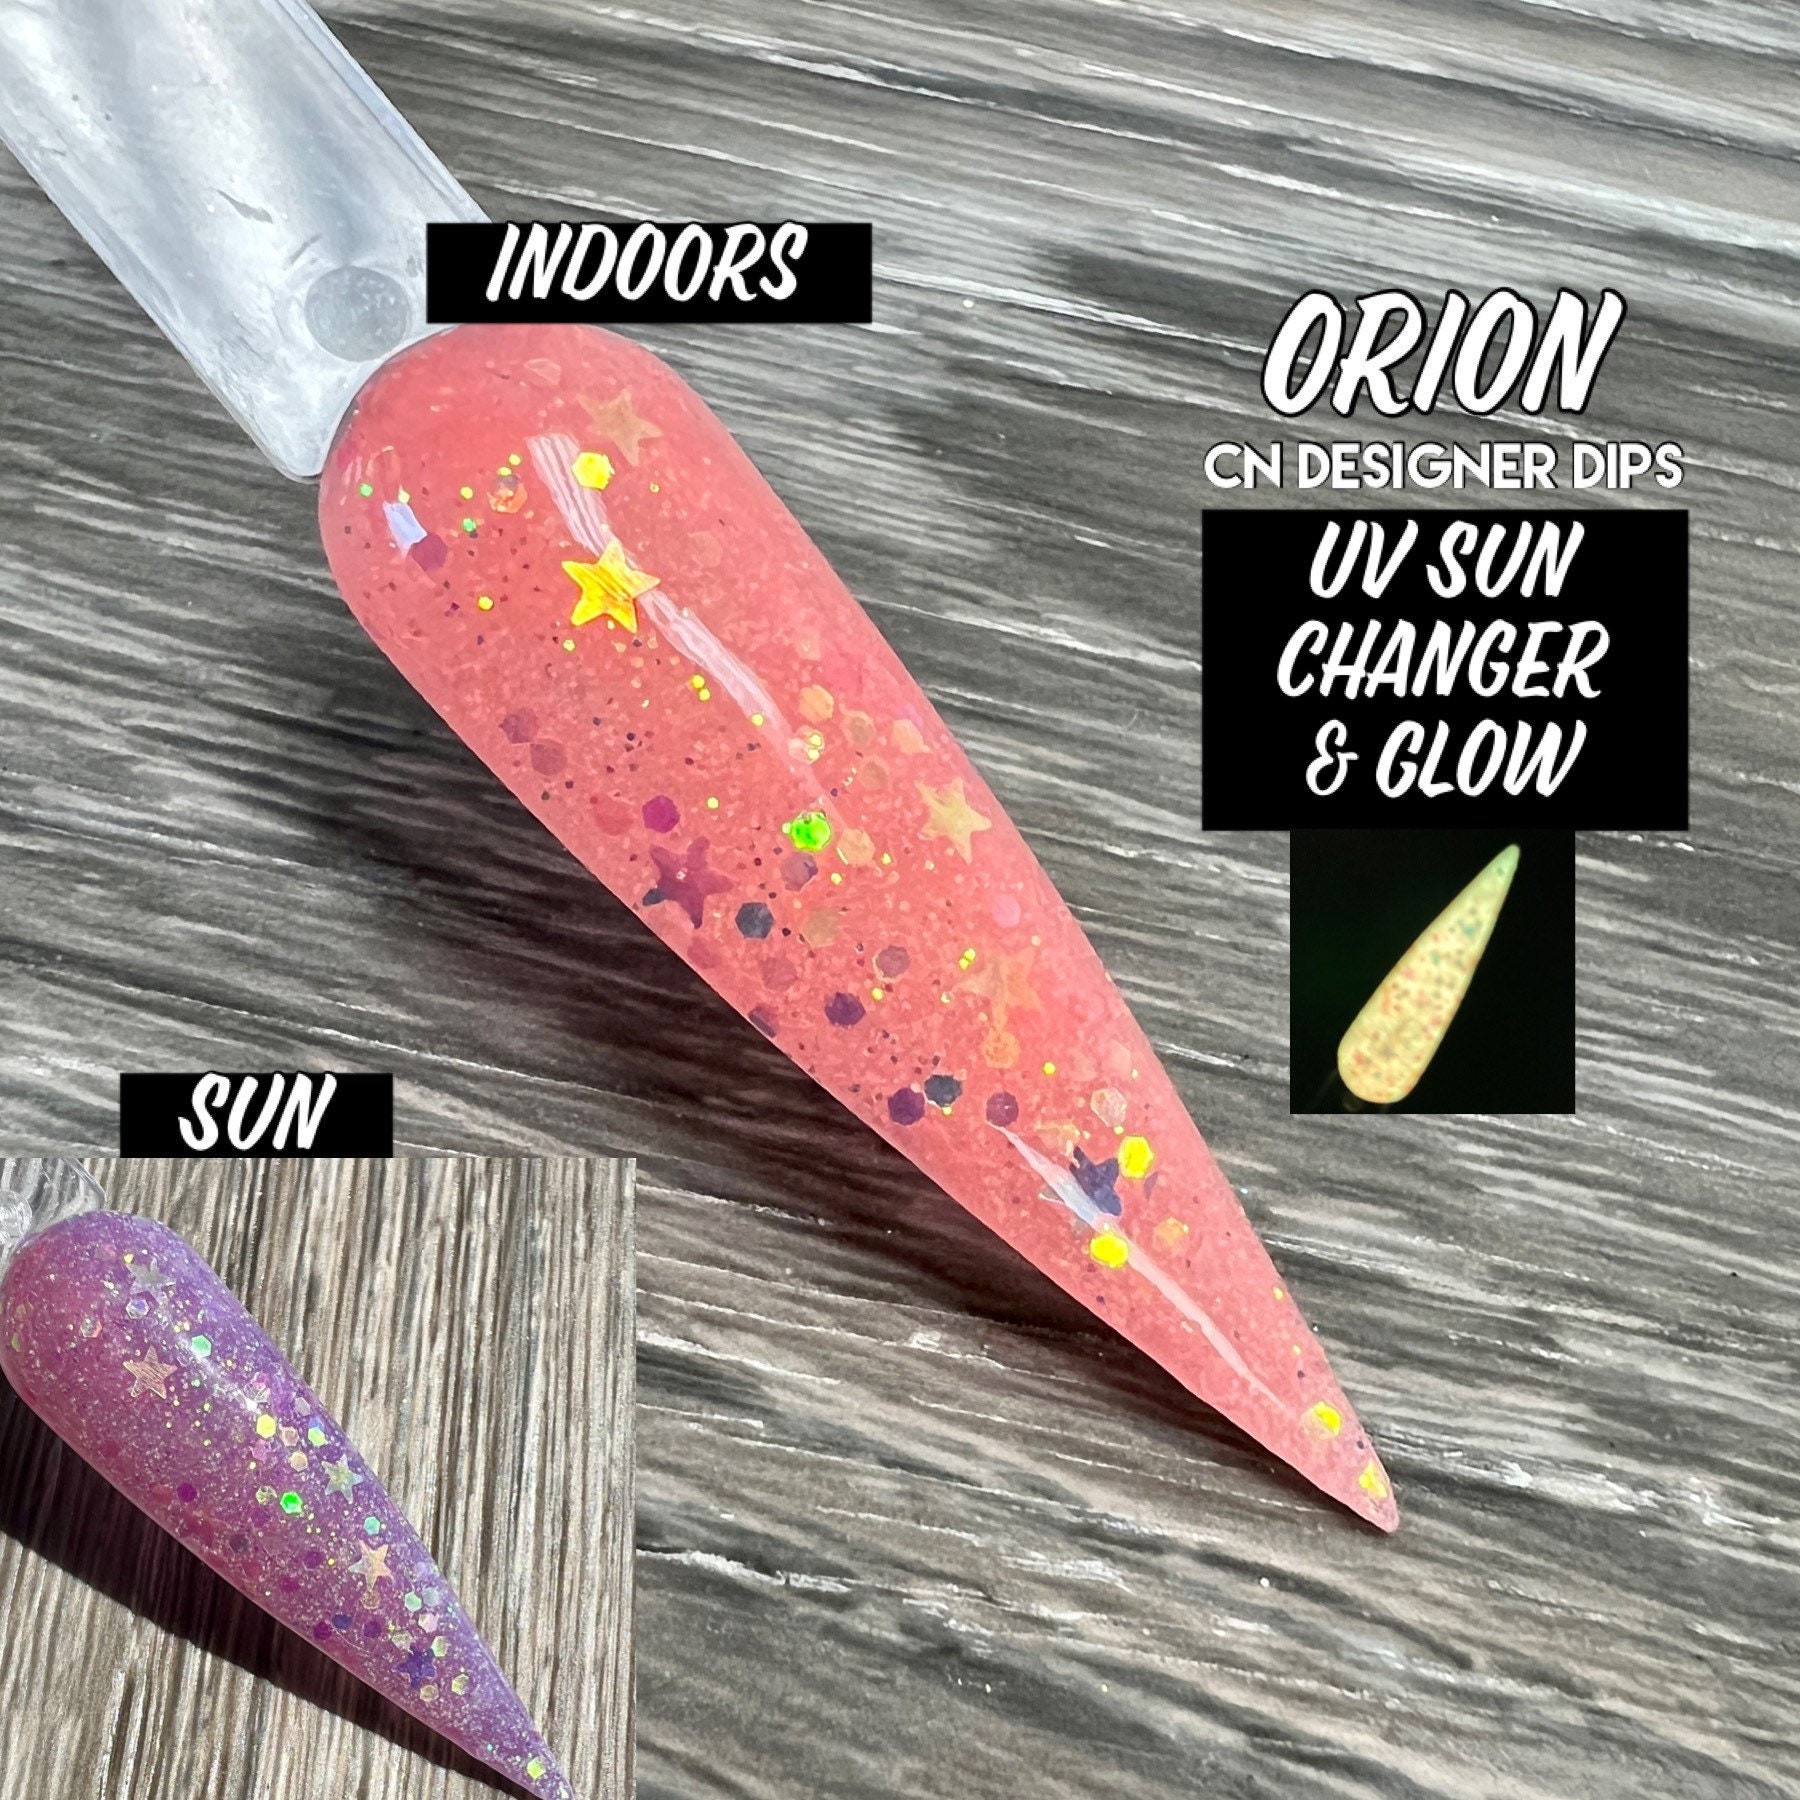 Orion - Dip Pulver, Pulver Für Nägel, Nagel Dip, Nagel, Acryl von Etsy - CNDesignerDips